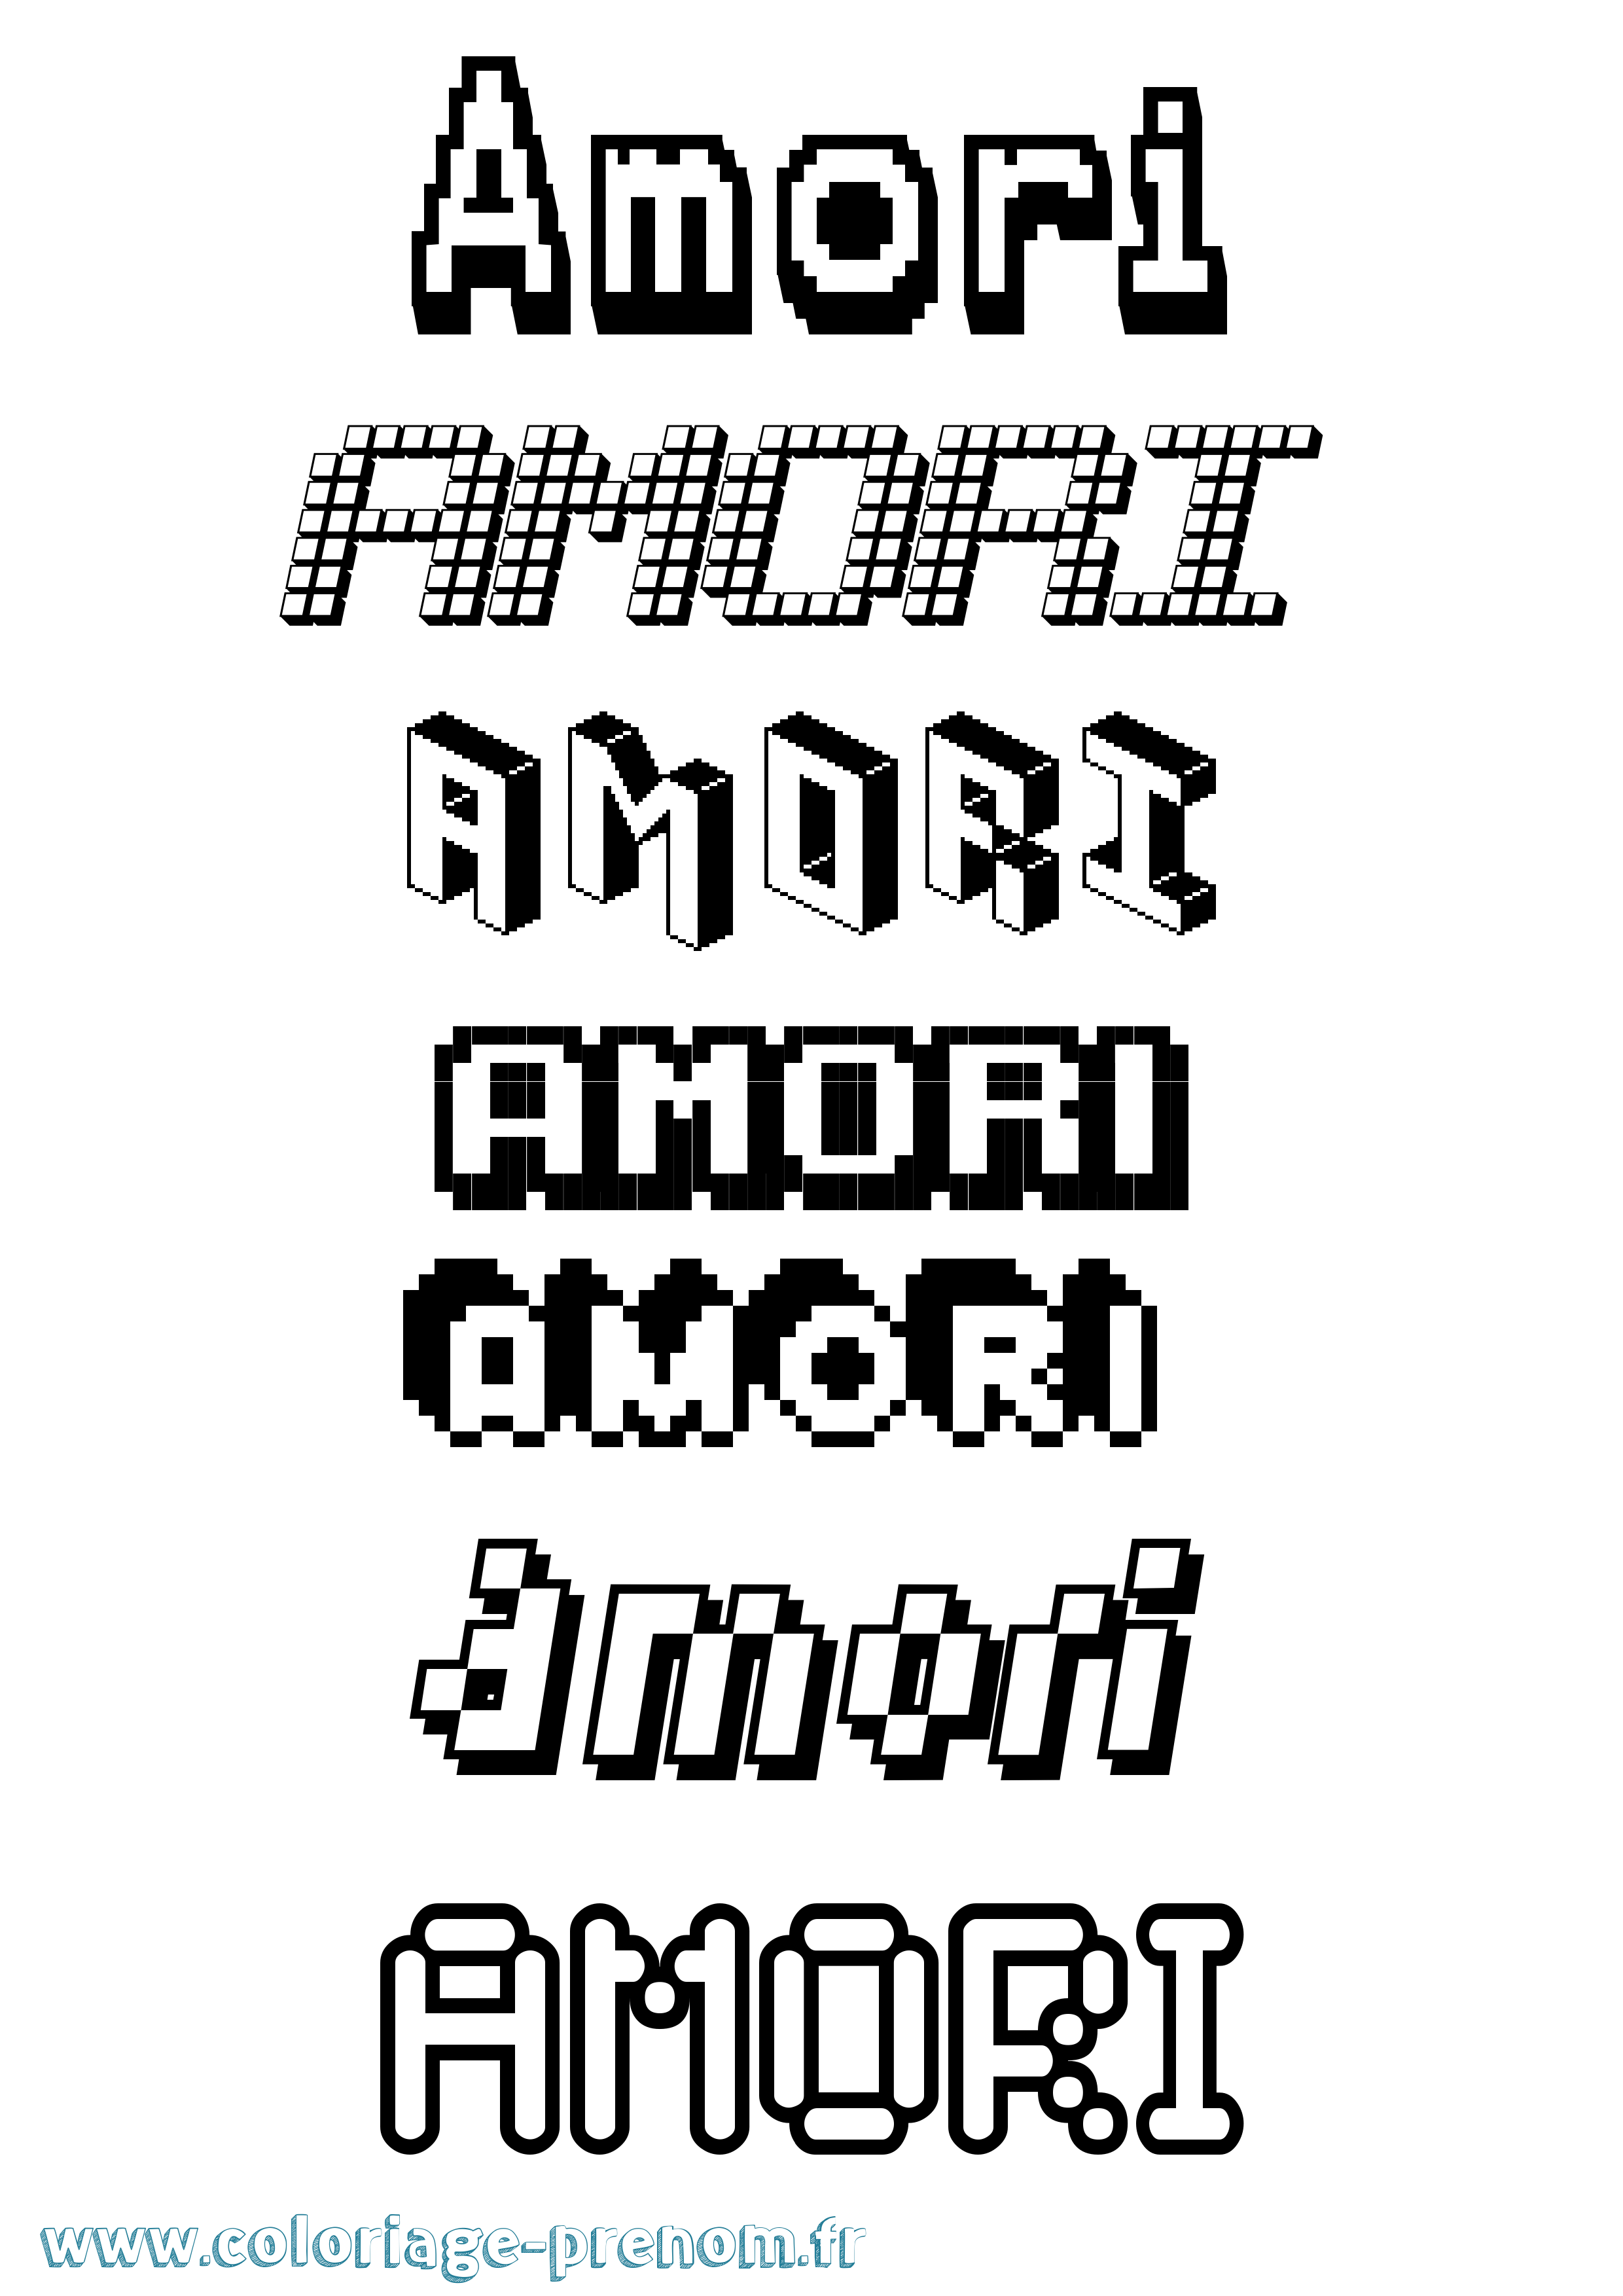 Coloriage prénom Amori Pixel